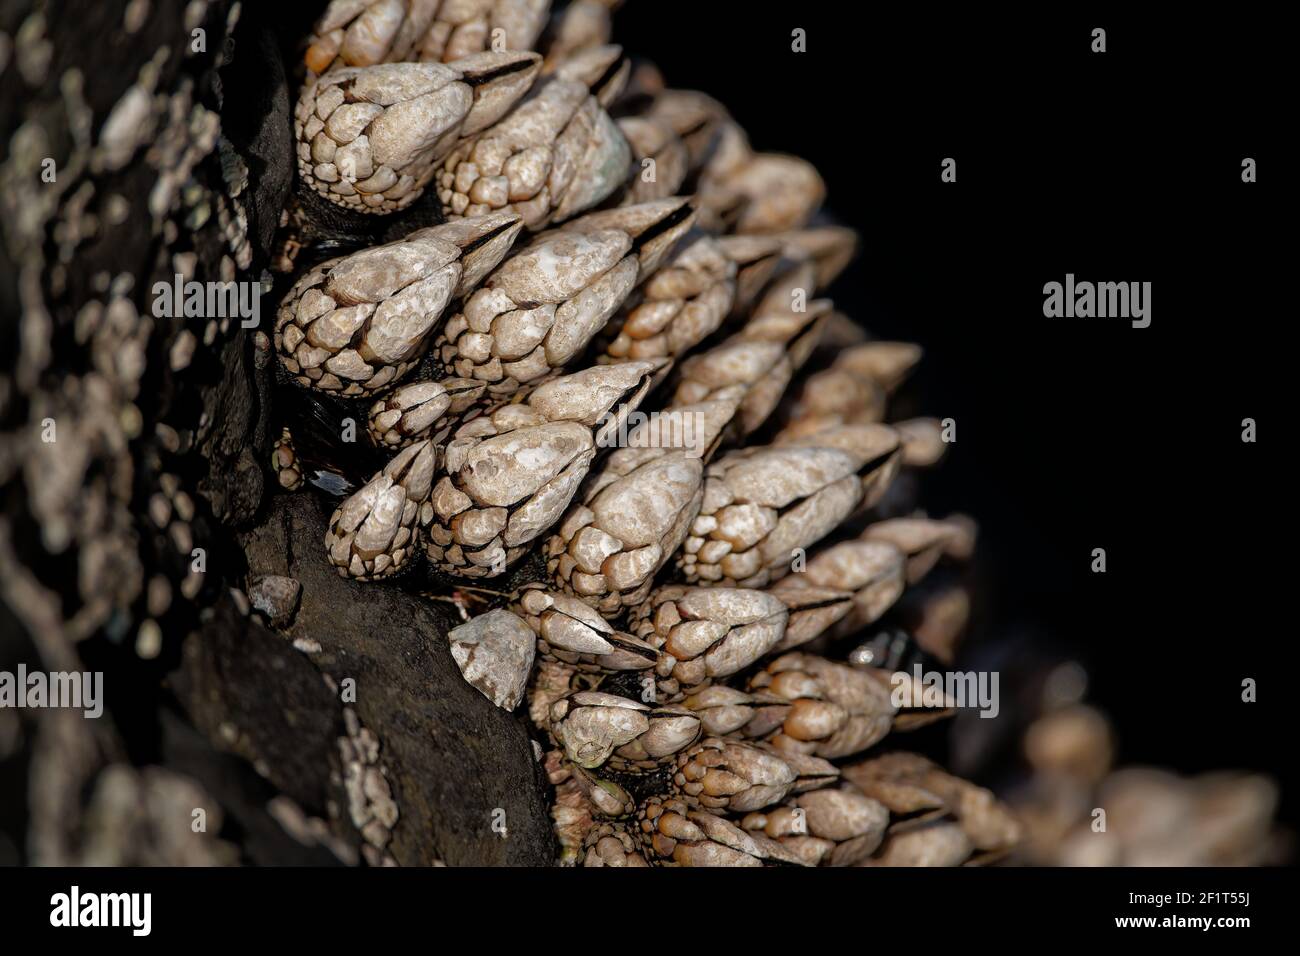 A closeup shot of Gooseneck barnacles Stock Photo